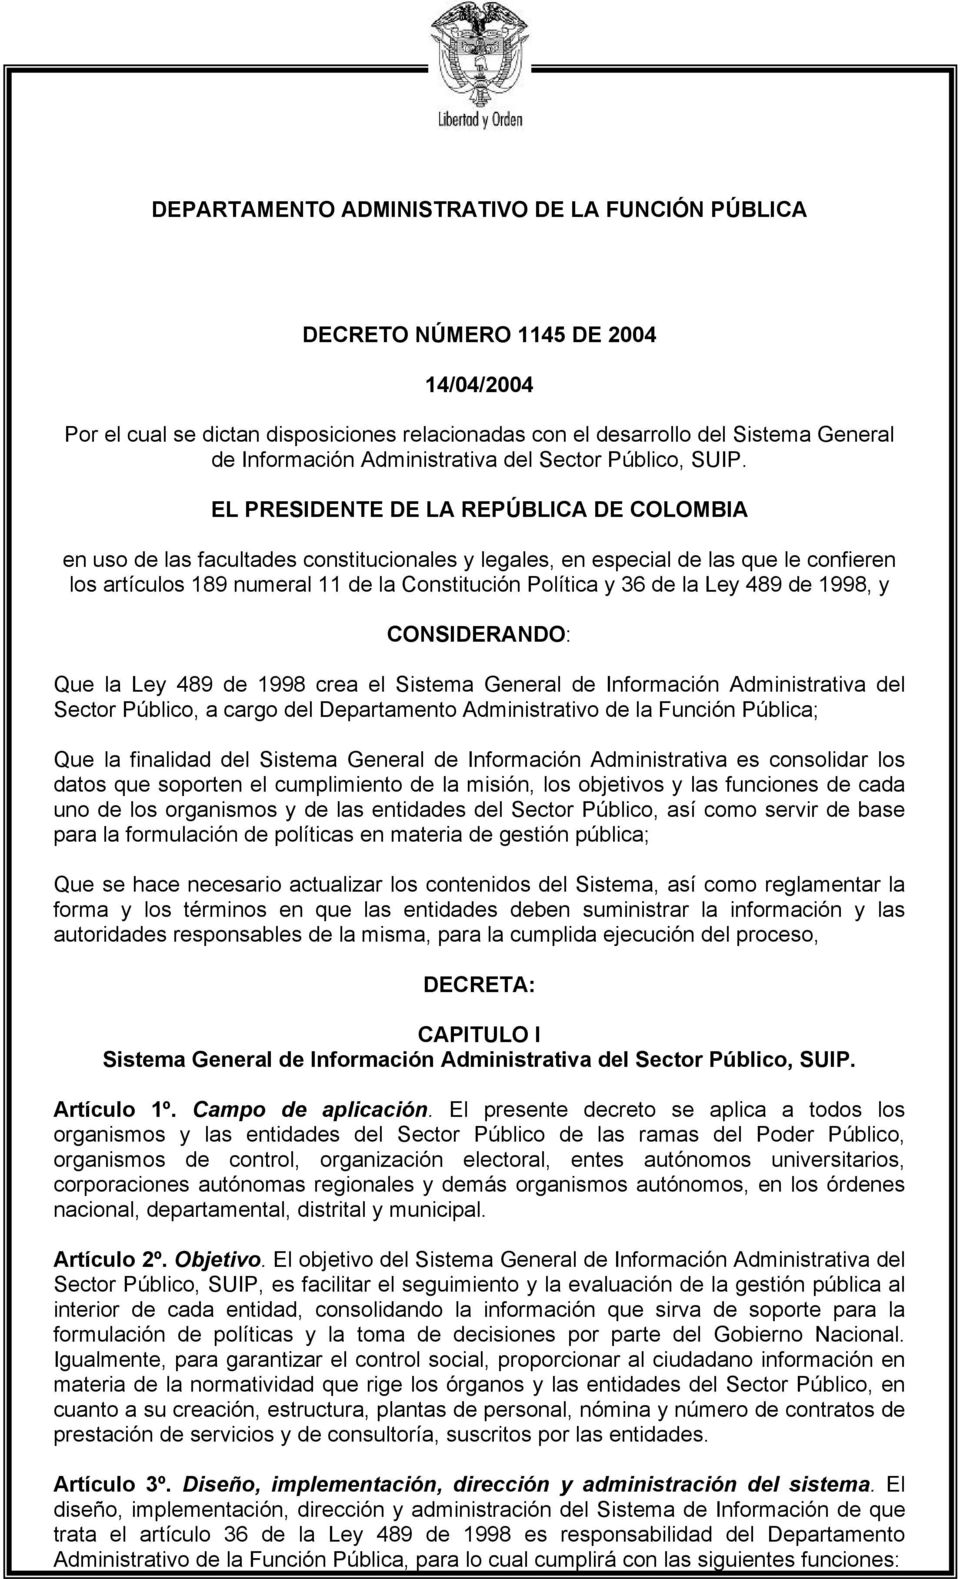 EL PRESIDENTE DE LA REPÚBLICA DE COLOMBIA en uso de las facultades constitucionales y legales, en especial de las que le confieren los artículos 189 numeral 11 de la Constitución Política y 36 de la